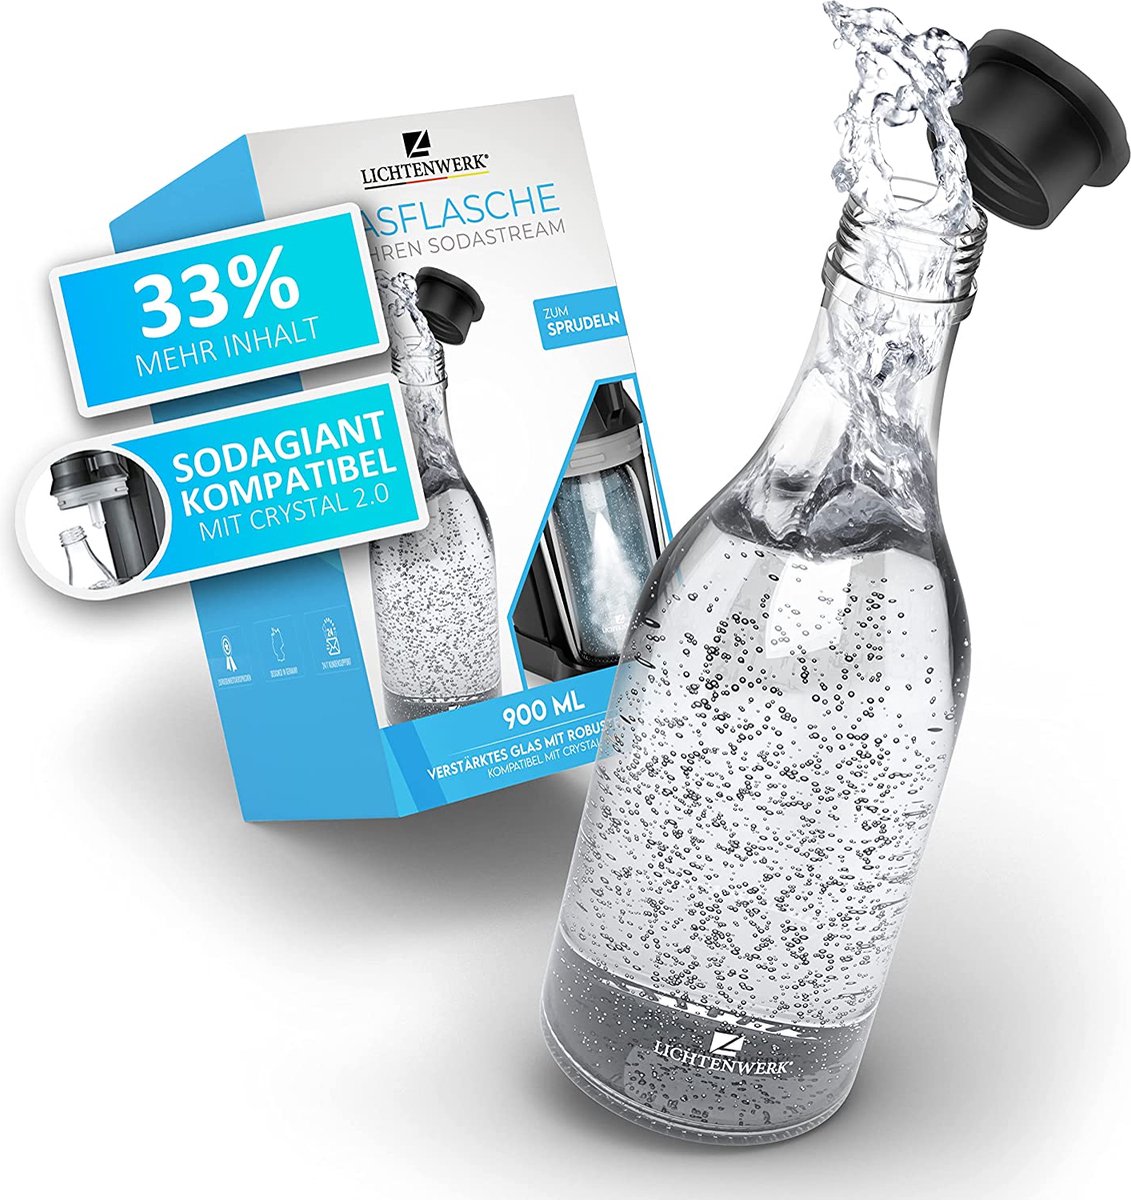 LICHTENWERK® Premium glazen fles compatibel met Sodastream Crystal 2.0 [33% MEER SPRAY] - Edele glazen karaf met meer volume - Drinkfles om te bruisen - Koolzuurhoudend geschikt - Vaatwasmachinebestendig